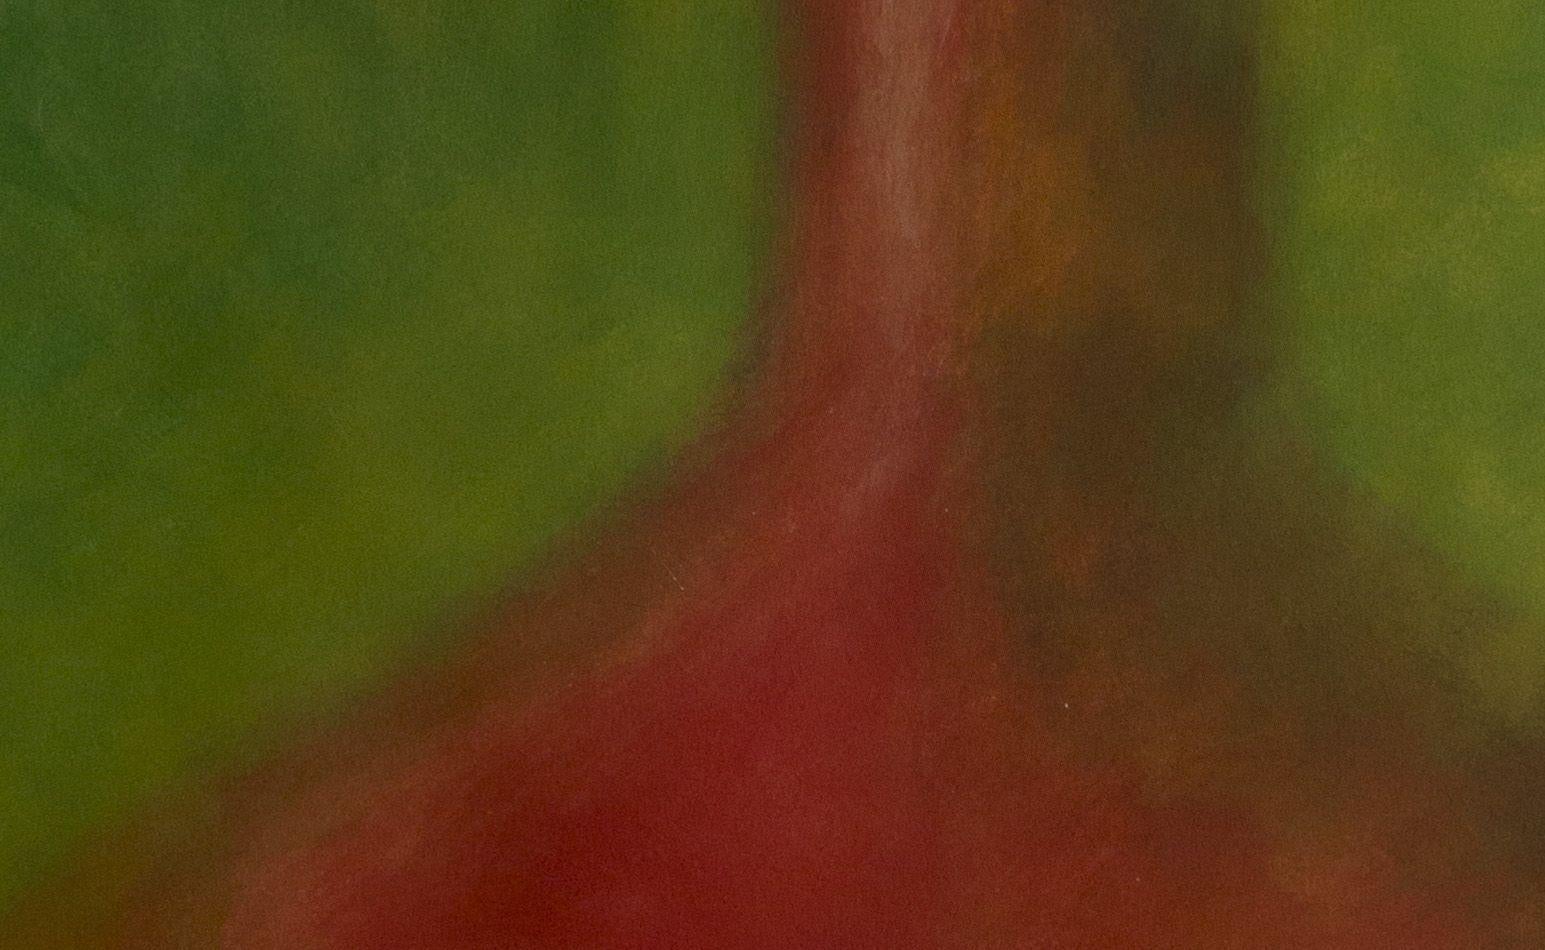 Rote Amphora auf Grün, Mischtechnik auf Aquarellpapier (Zeitgenössisch), Mixed Media Art, von Zev Robinson